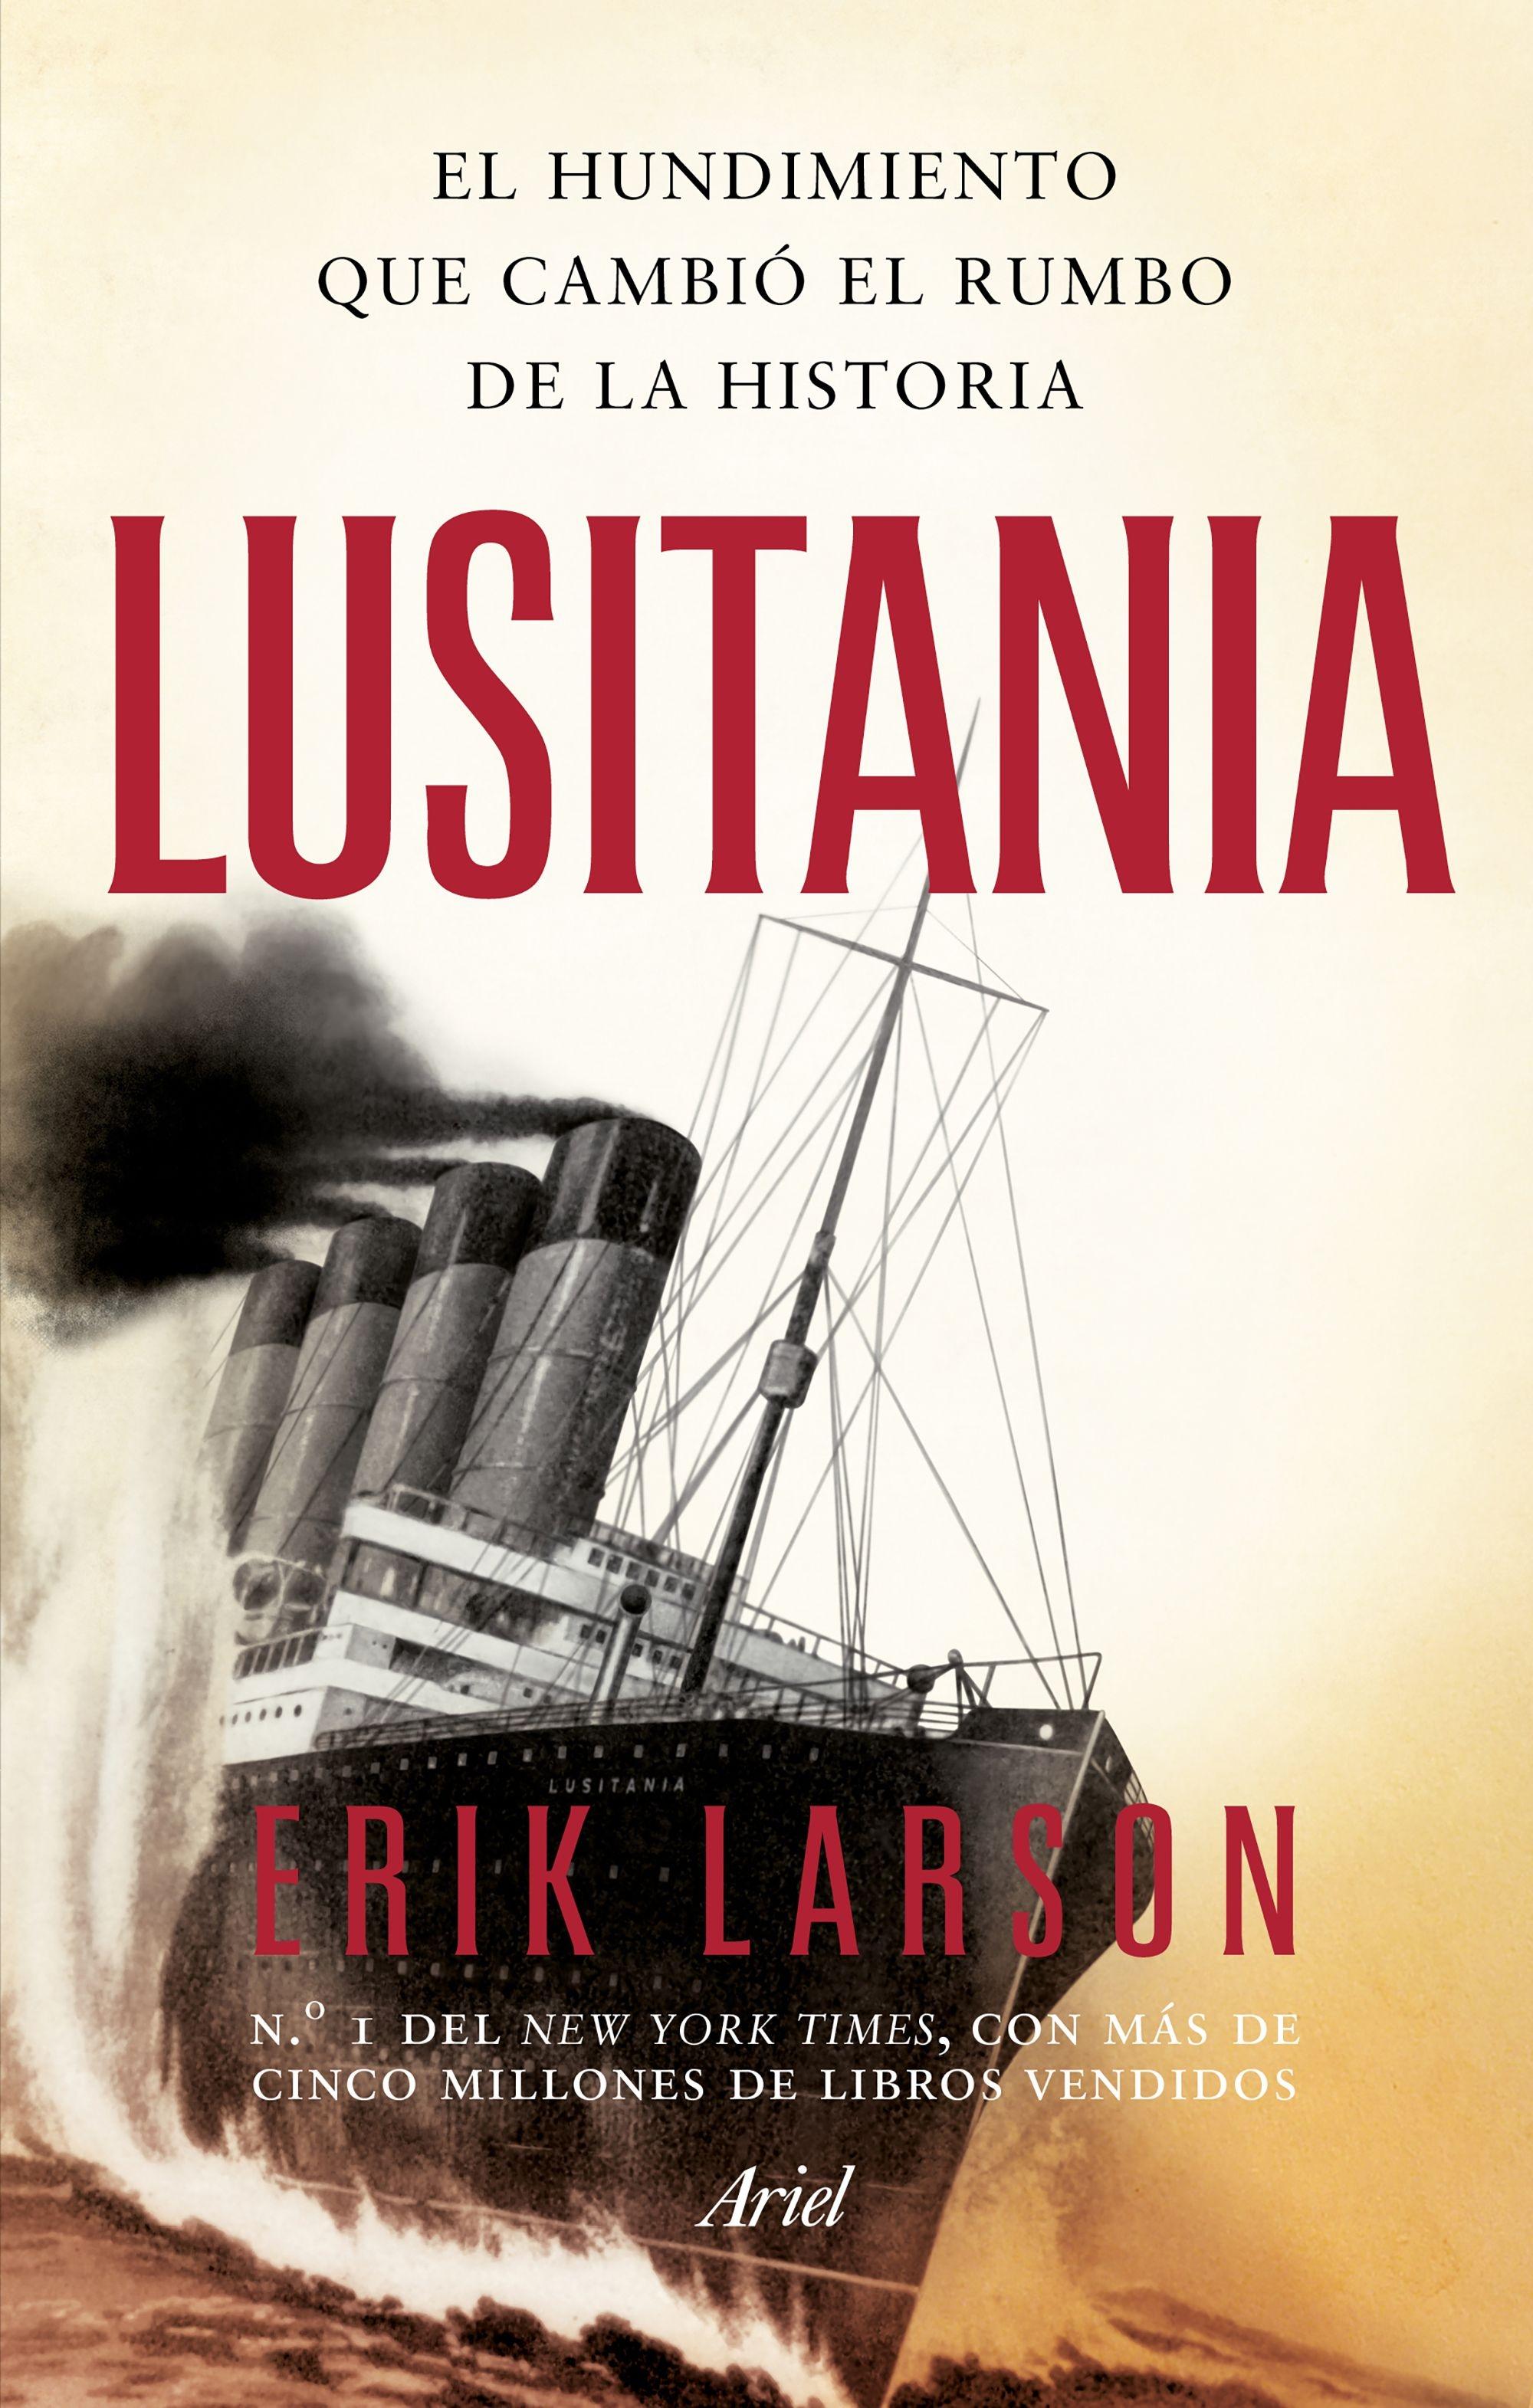 Lusitania "El hundimiento que cambió el rumbo de la historia"